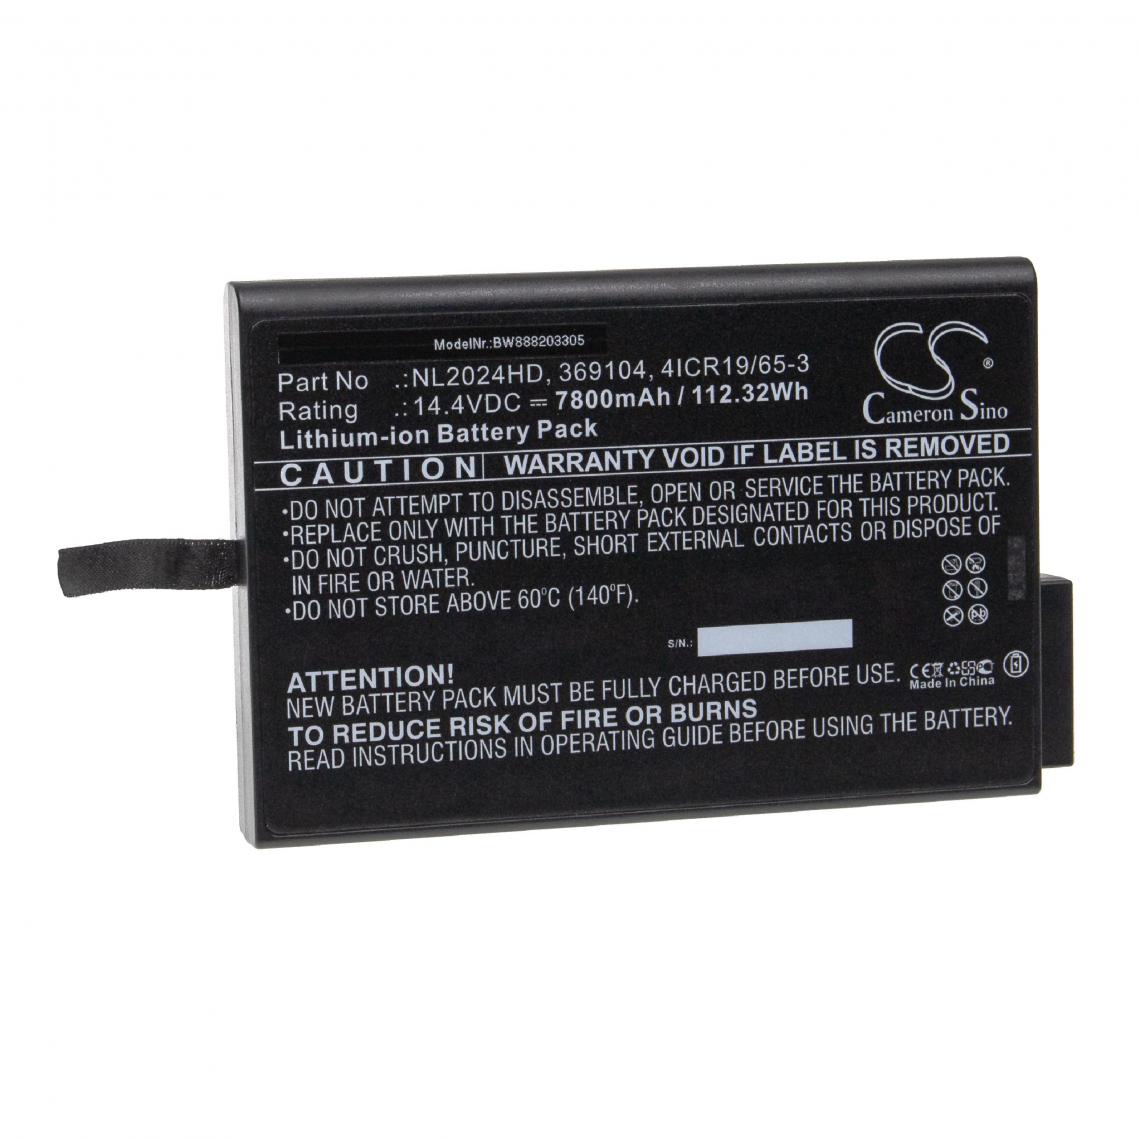 Vhbw - vhbw Batterie compatible avec Hamilton C2, C2 ventilator, C3, C3 ventilator appareil médical (7800mAh, 14,4V, Li-ion) - Piles spécifiques